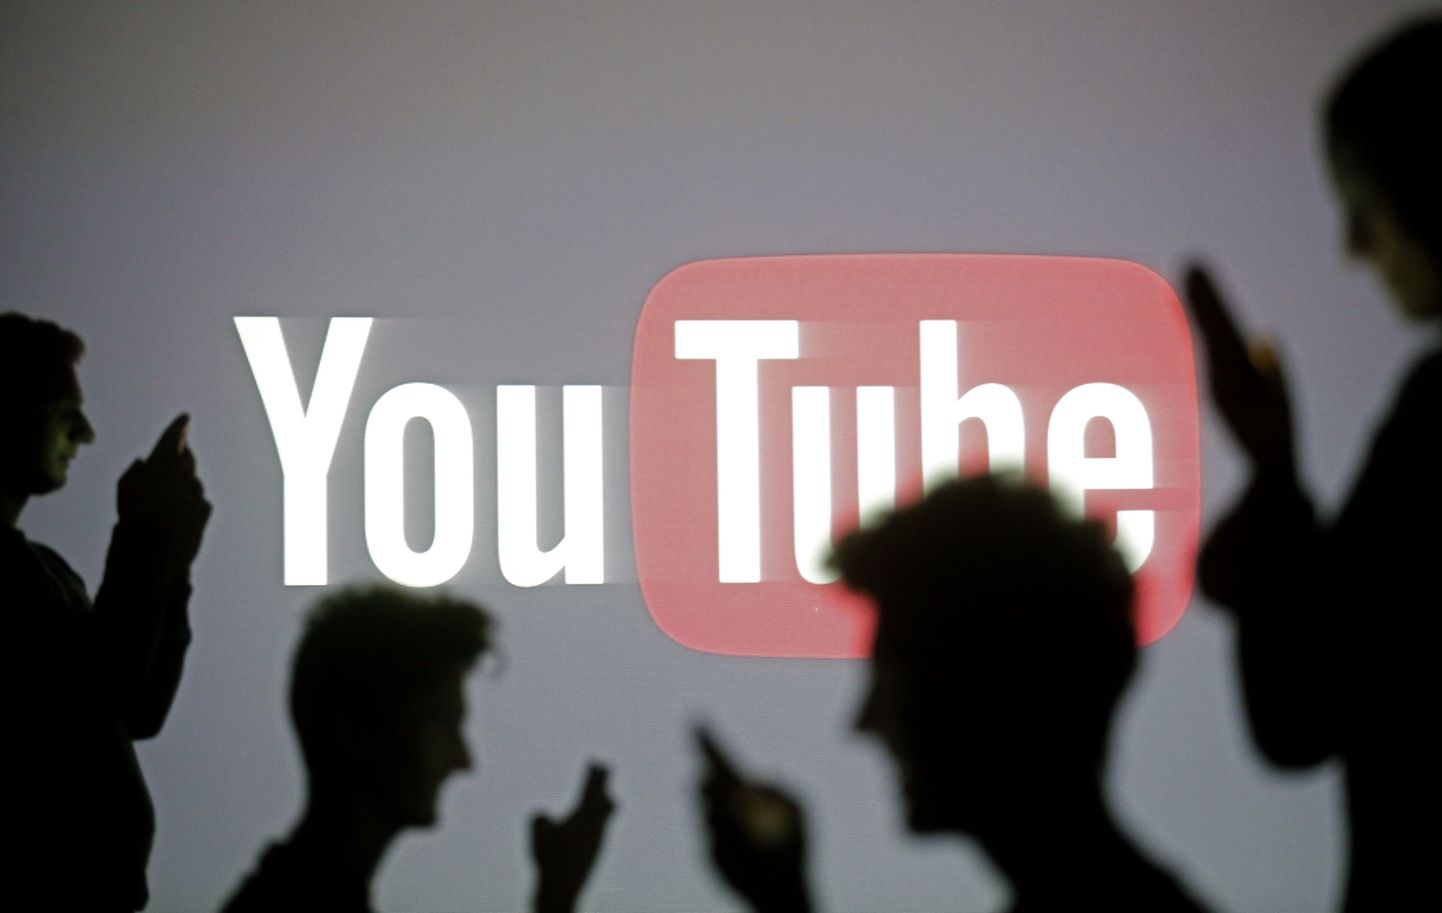 Eestlastele läheb Youtube'i kasutamine raha teenimiseks lihtsamaks.